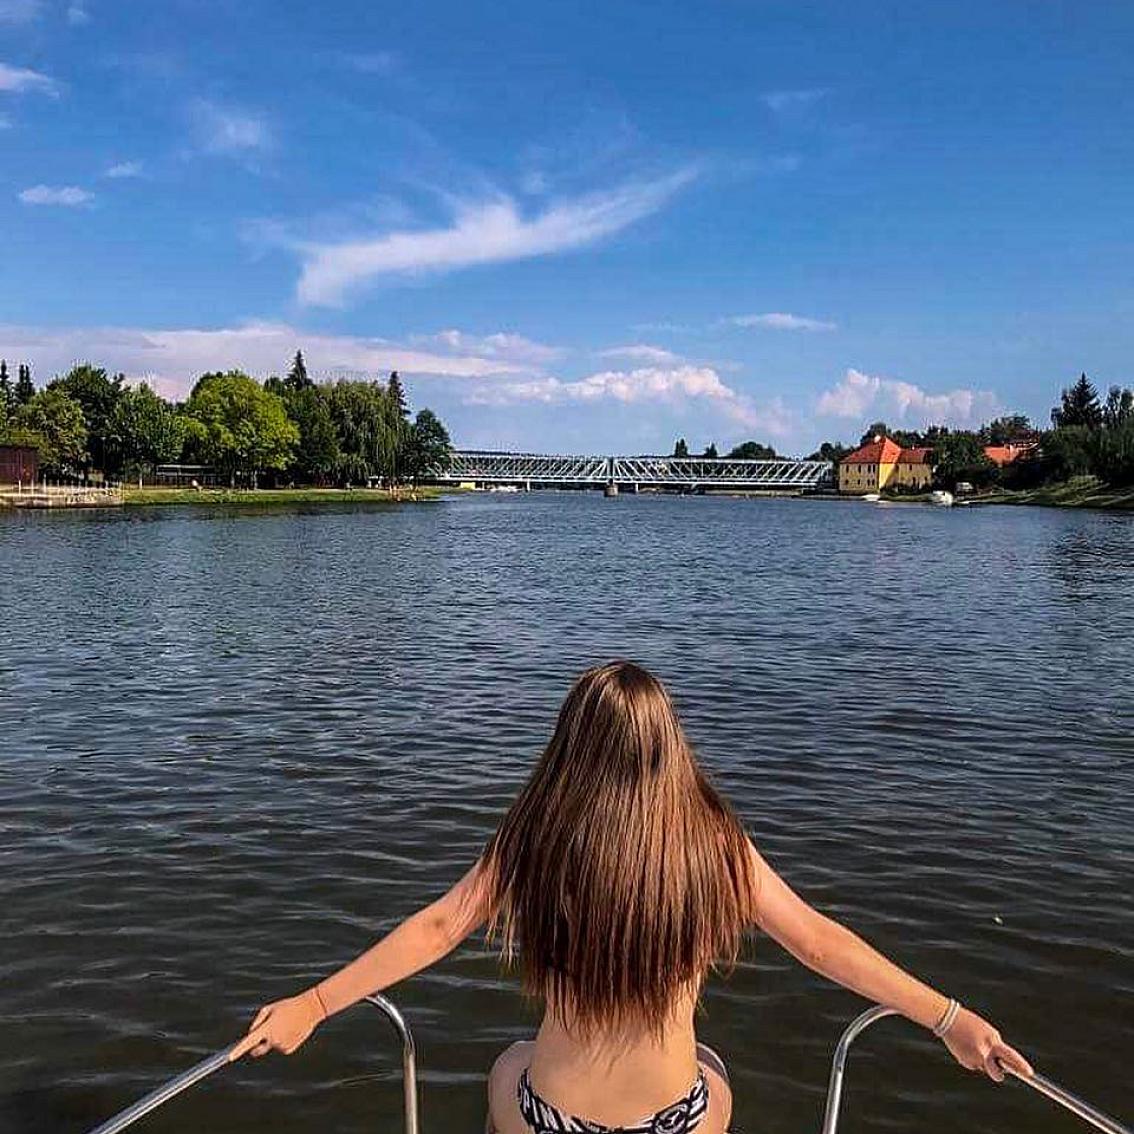 Stezka Vltavy on Instagram: “Loďky, čluny a parníky🚣‍♀️. Sluníčko, voda a relax 🏝. My si léto na Stezce Vltavy užíváme plnými doušky, tak pojeďte taky na vodu a buďte…”